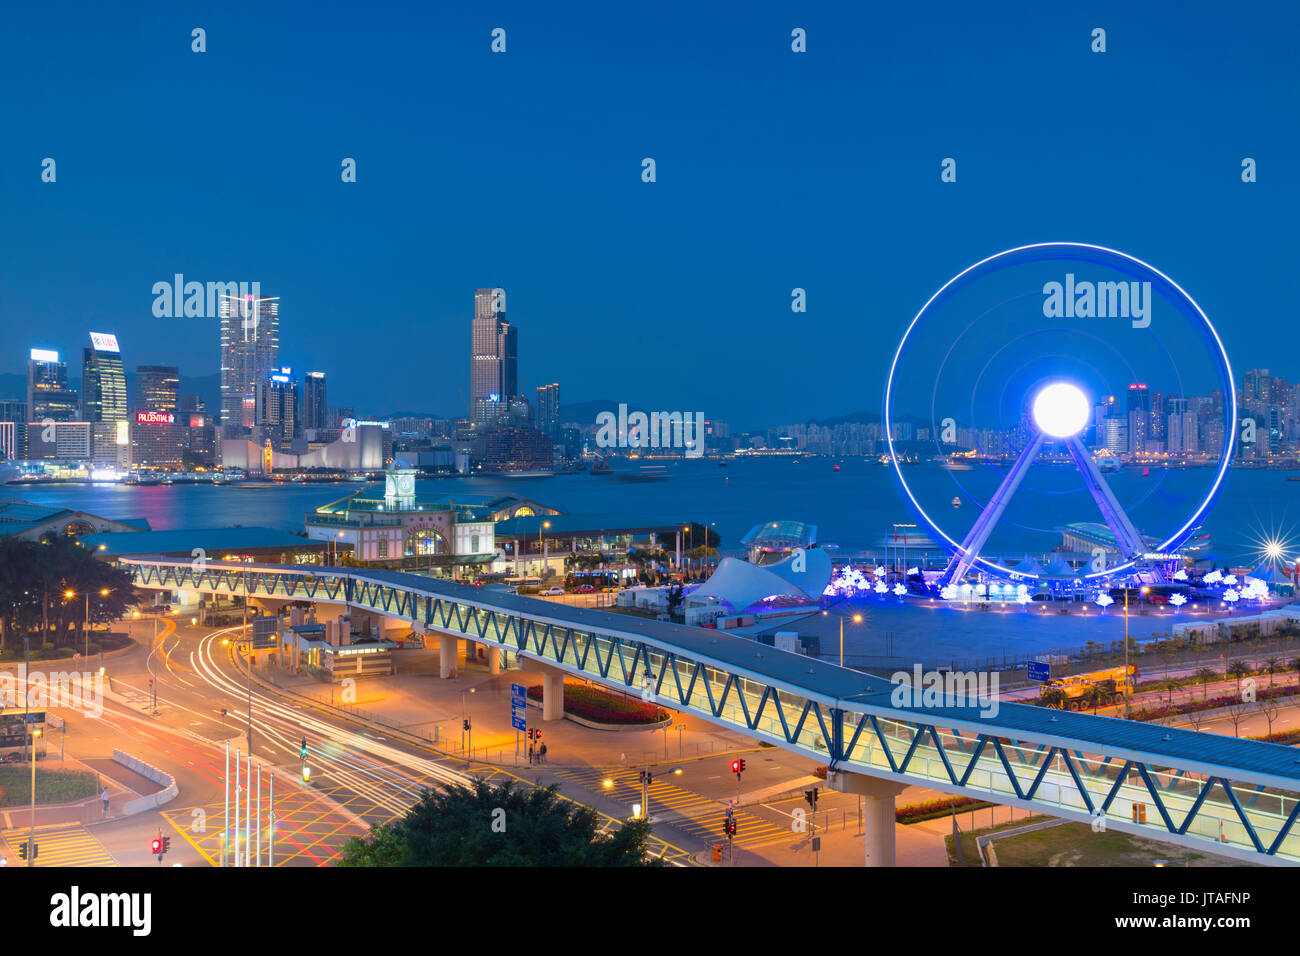 Ansicht der Star Ferry Pier, Riesenrad und Skyline von Tsim Sha Tsui, Central, Hong Kong, China, Asien Stockfoto